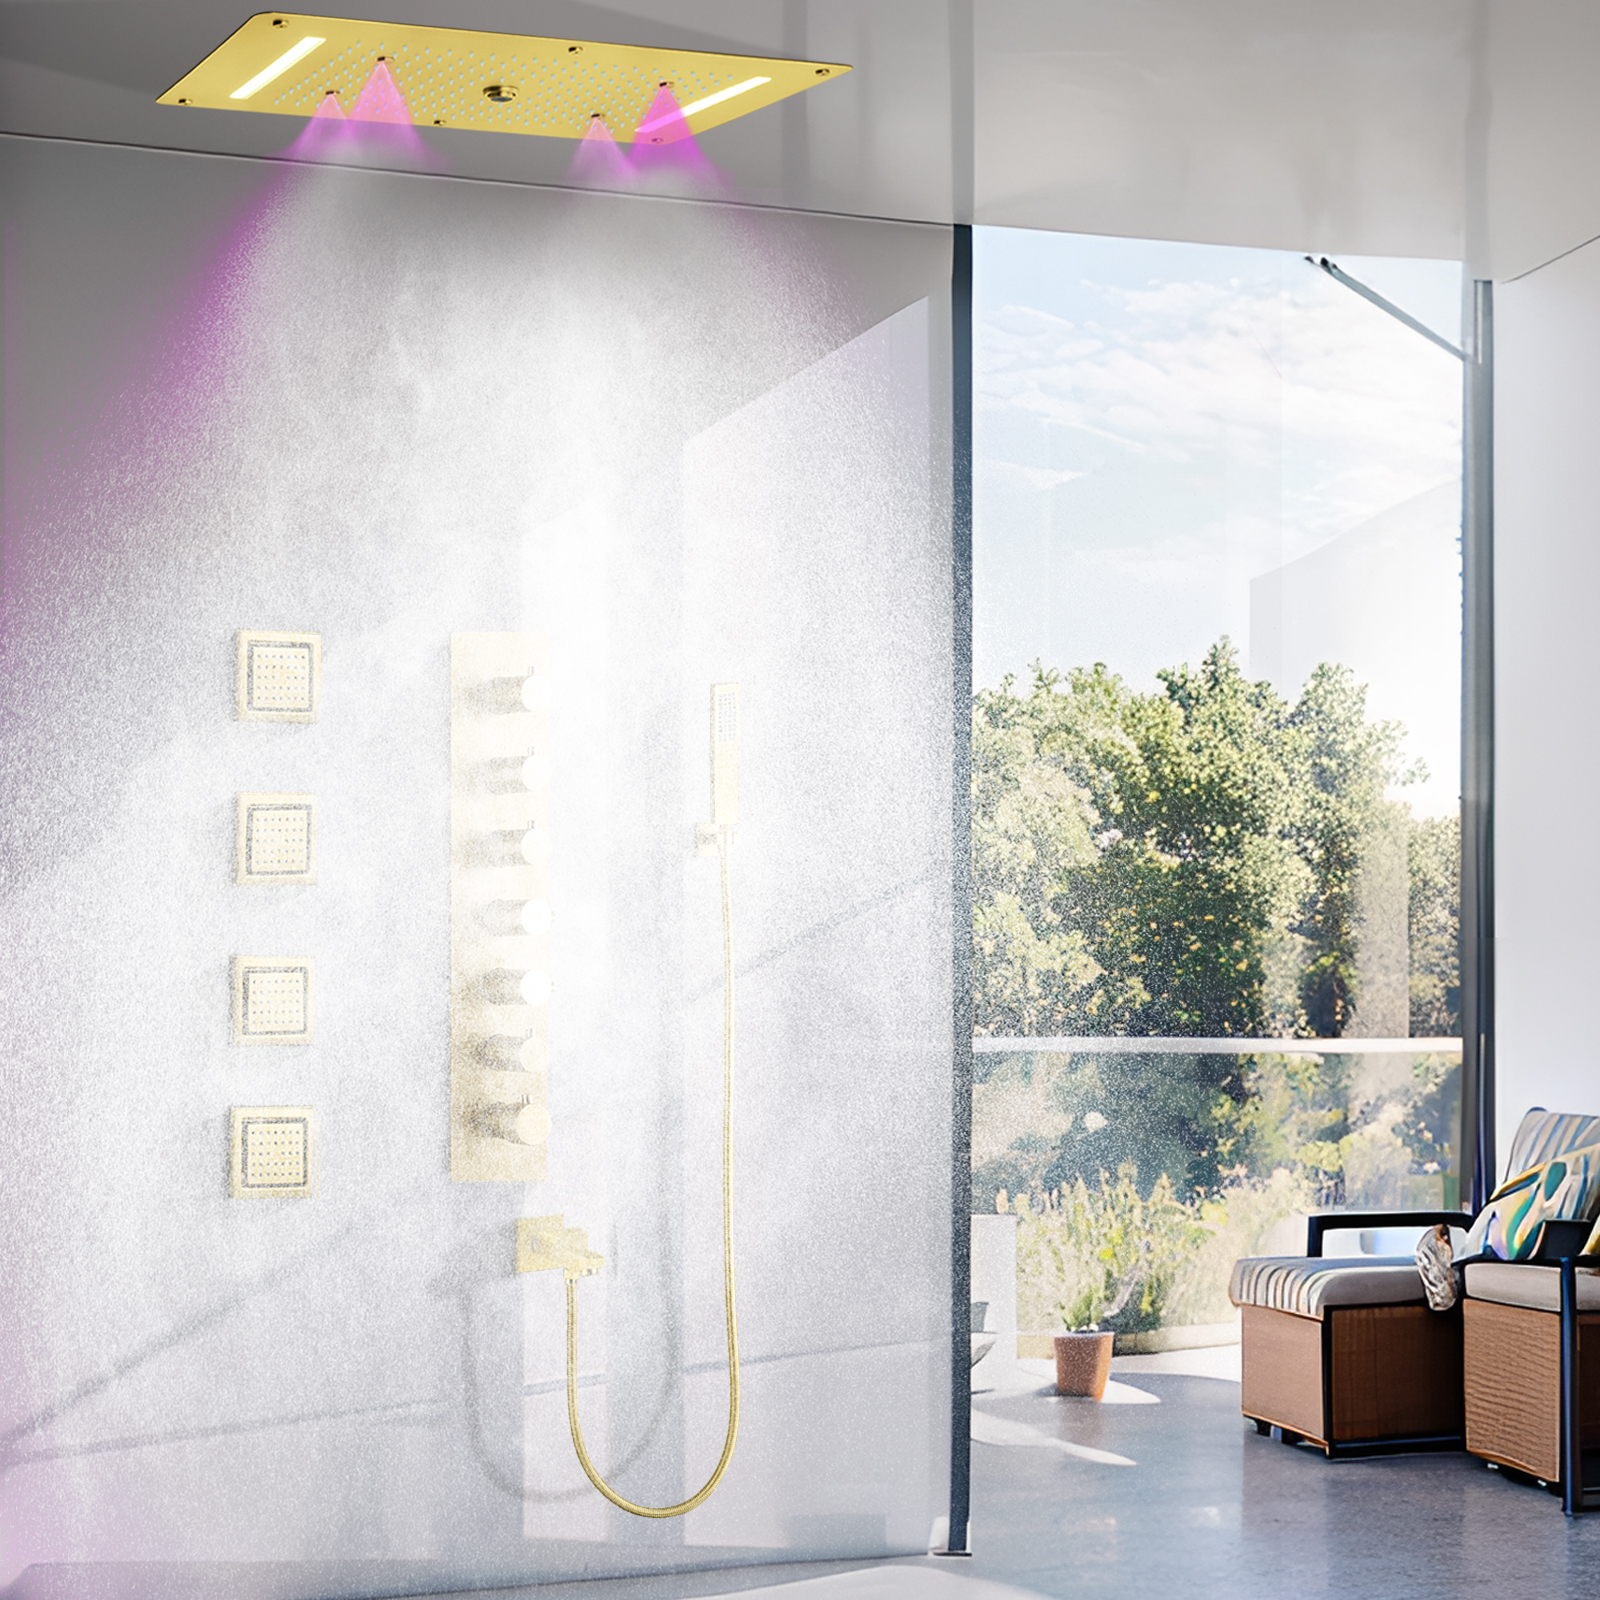 70x38cm Brushed Gold Shower Suite Hanging Blender Hidden LED Shower Room Bathroom Water Faucet Massage System